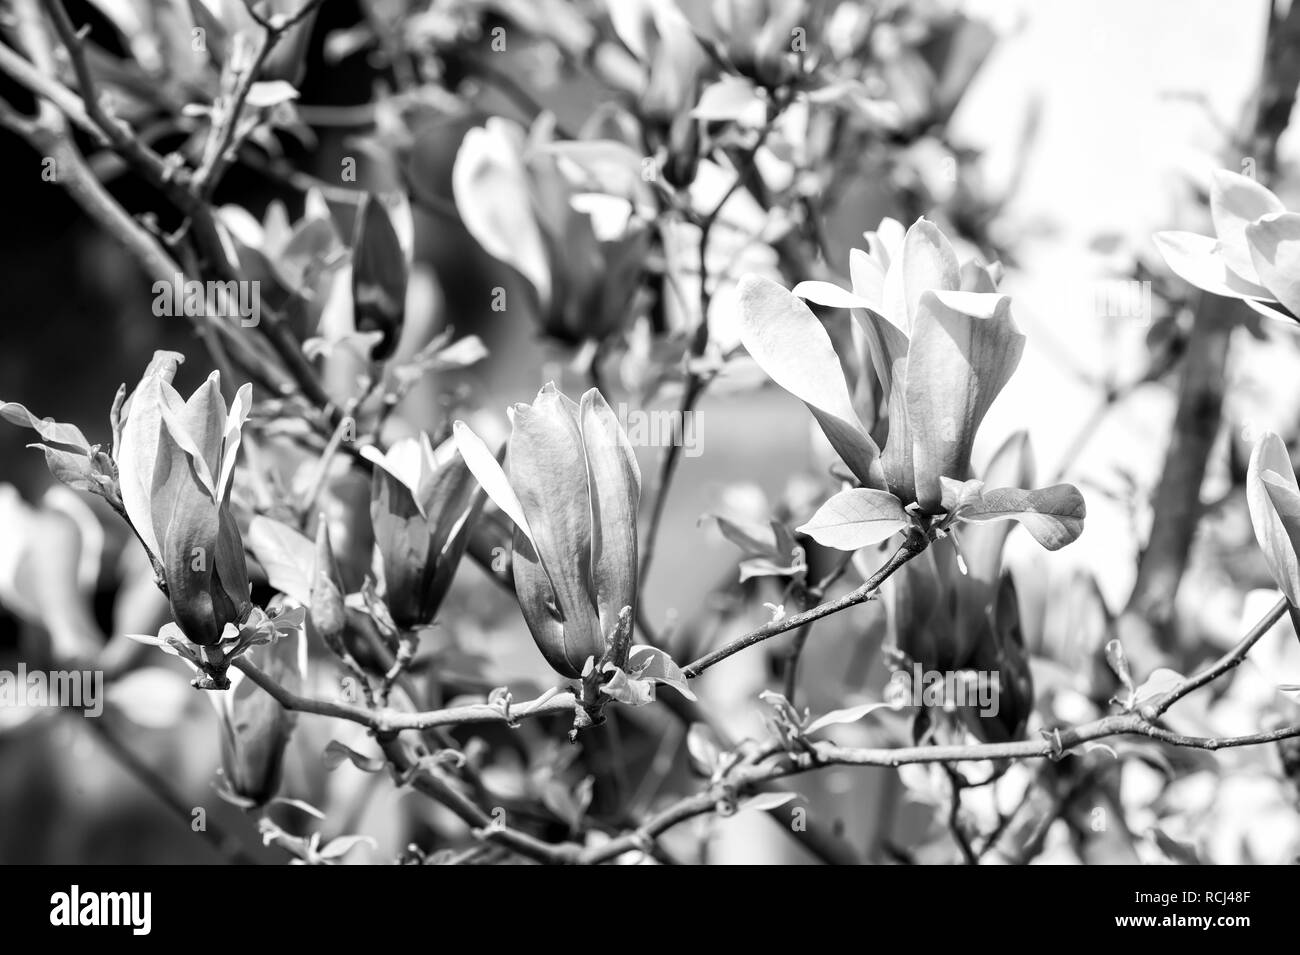 Magnolia à fleurs violettes aux beaux jours, au printemps. Blossom, Bloom, la floraison. Concept de la campagne de printemps. La nature, de la beauté, de l'environnement croissance nouvelle vie Banque D'Images